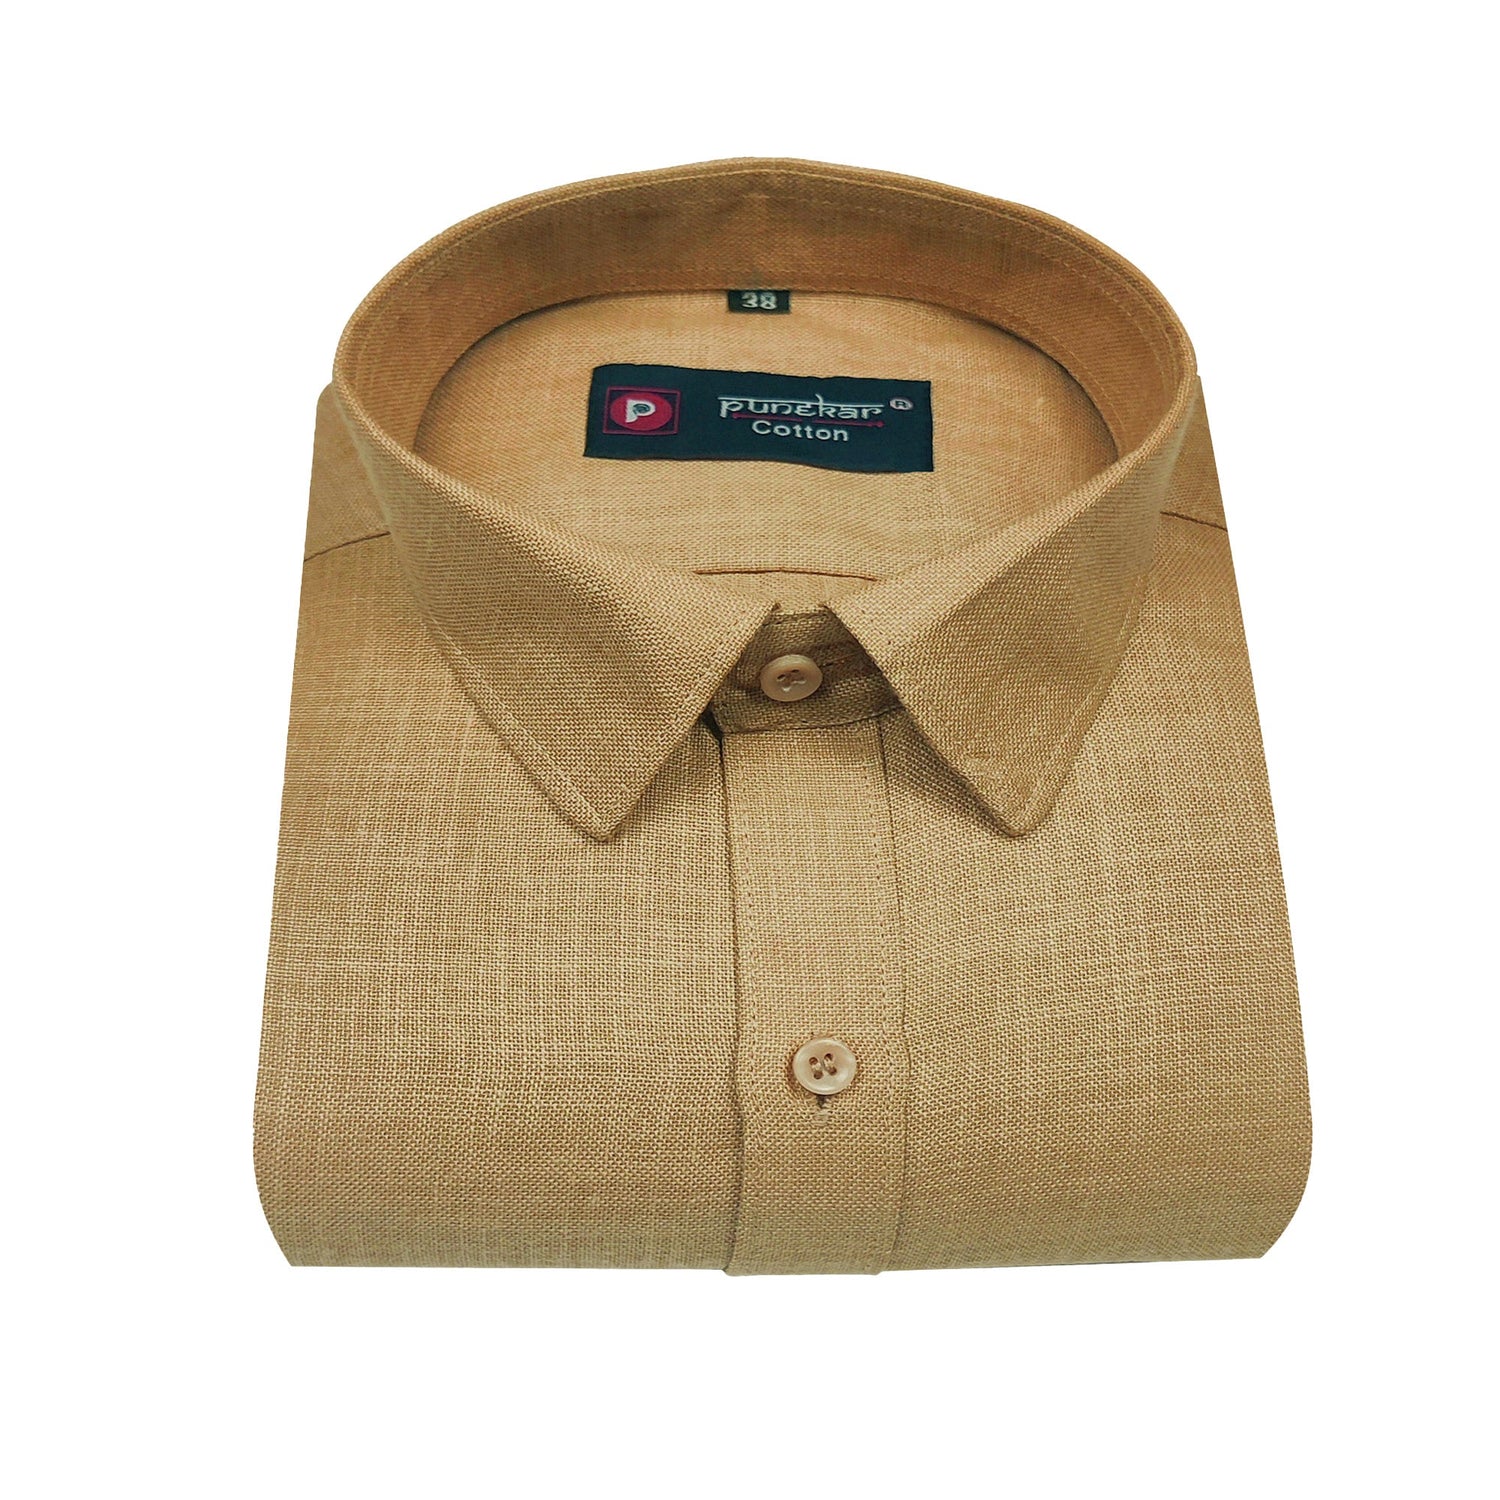 Font Color Blended Linen Shirt For Men&